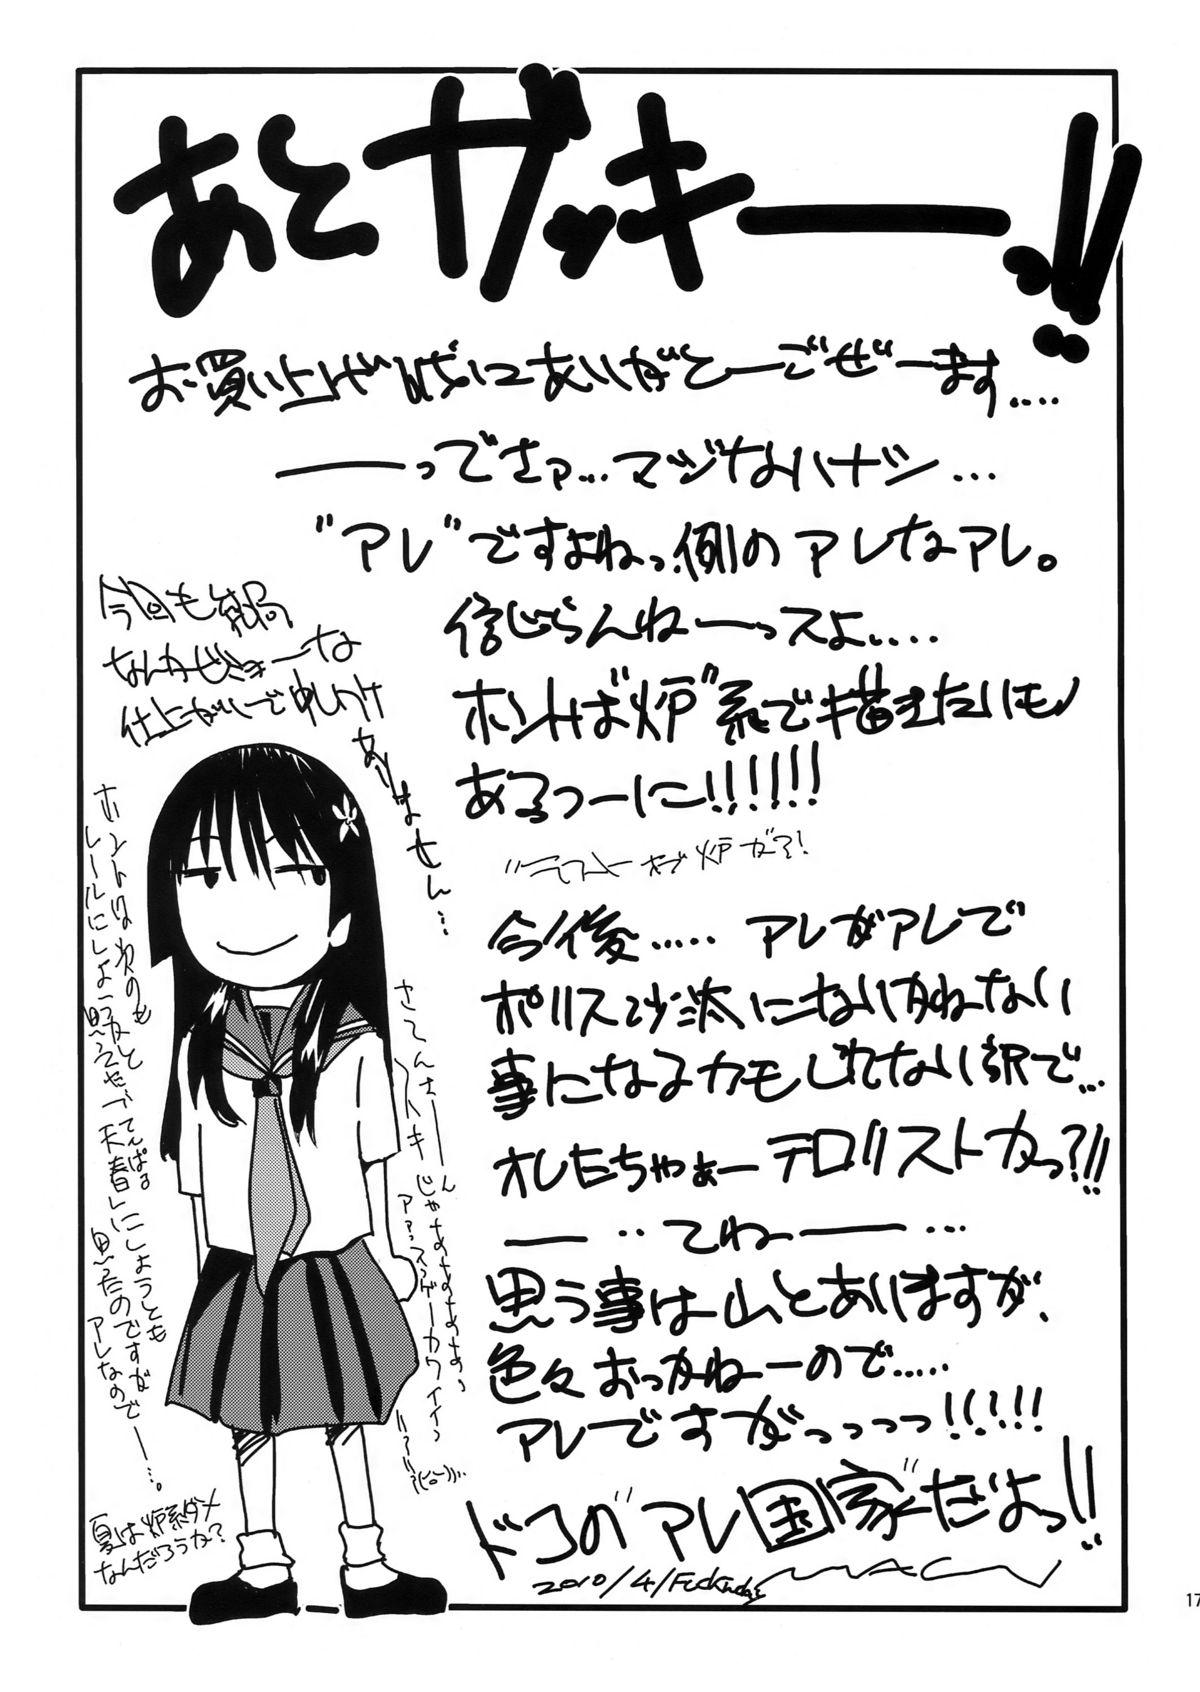 Sexy Sluts HaruTen - Toaru kagaku no railgun Mojada - Page 17